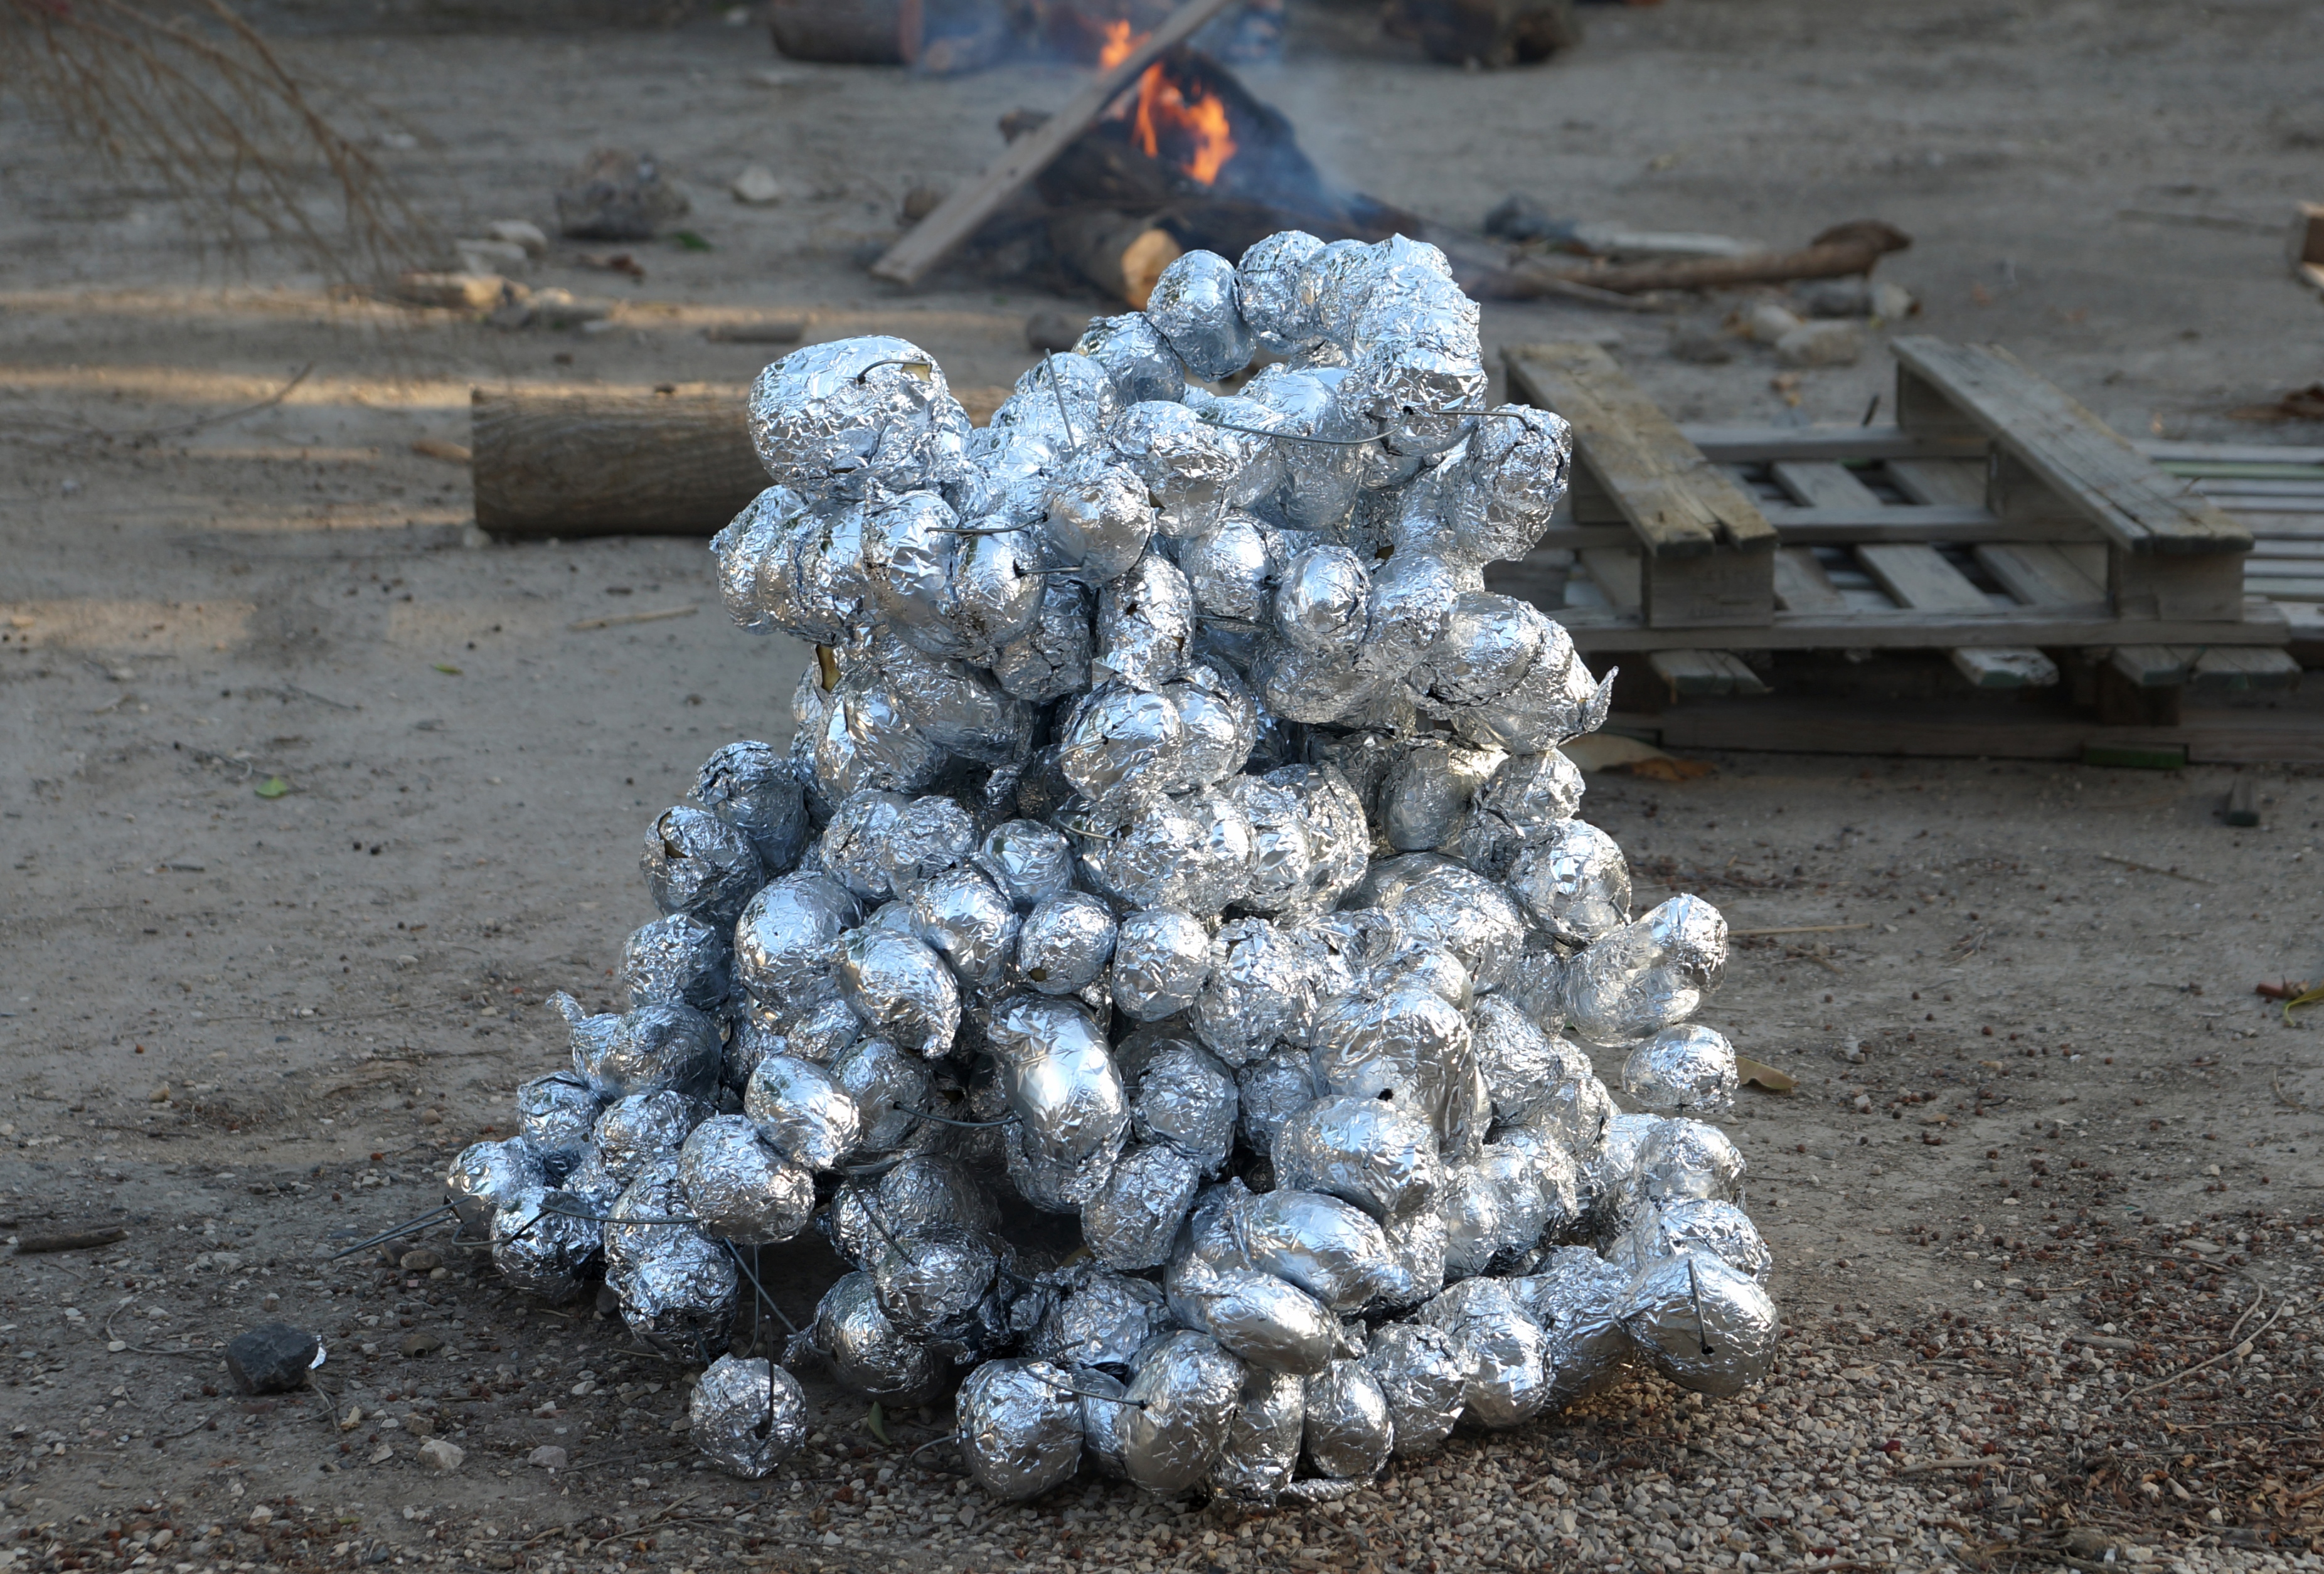 תפוחי אדמה מוכנים לצלייה באש לג בעומר אריק בלקינד